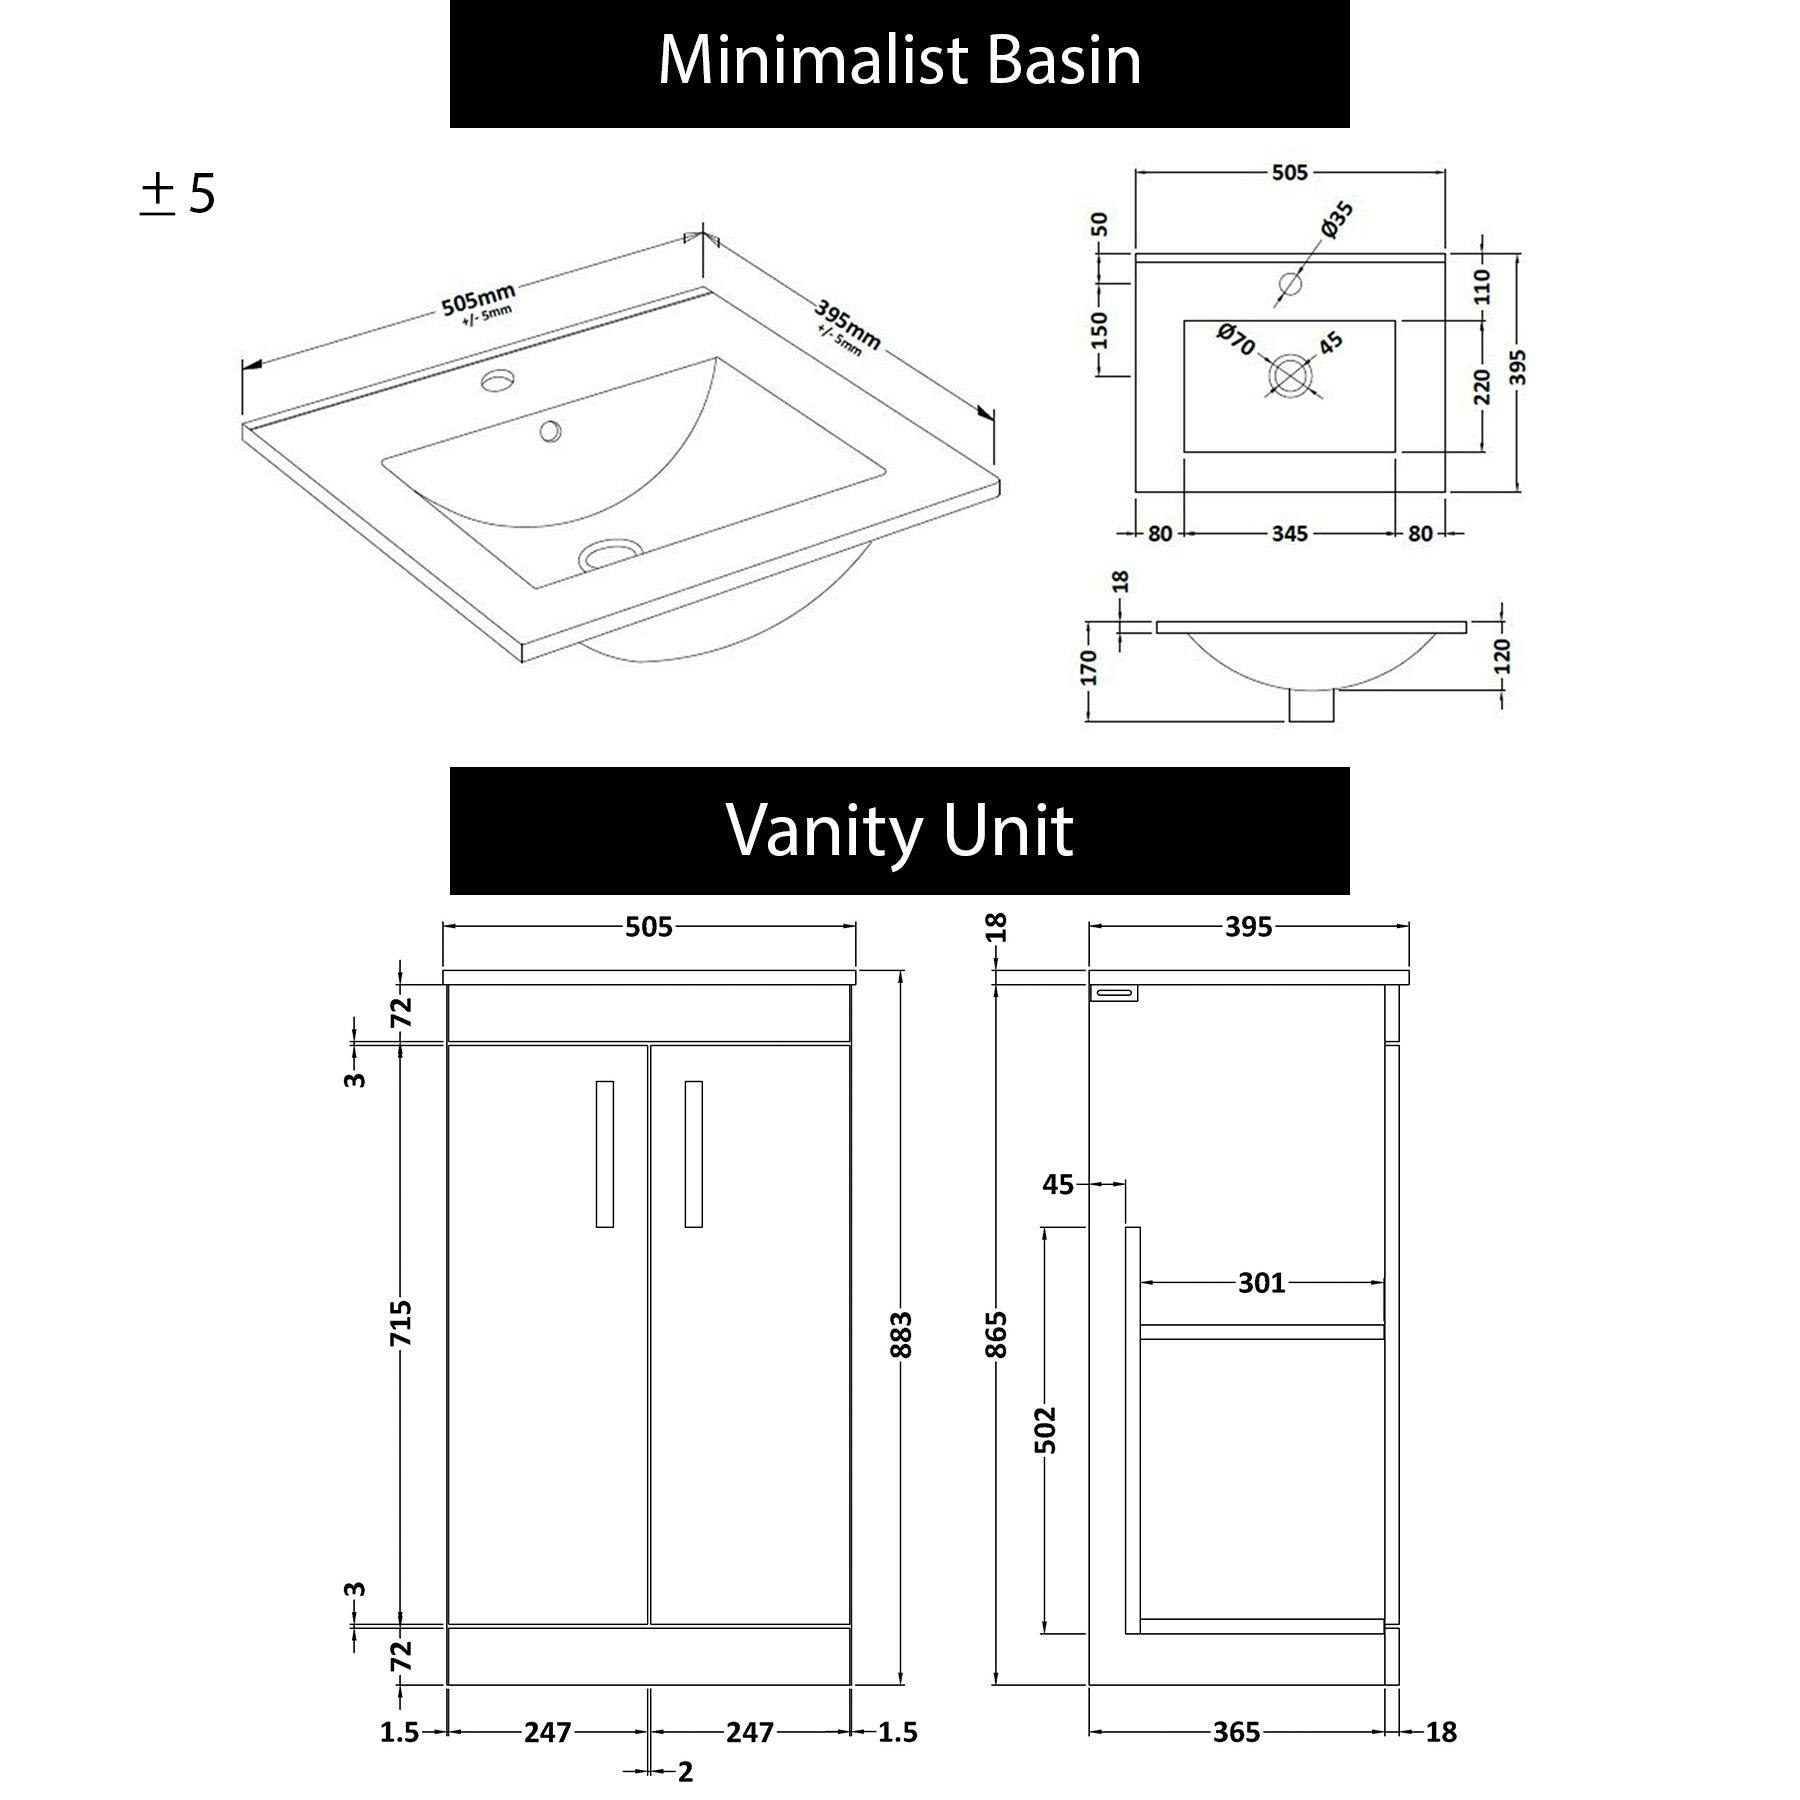 Cesar 500mm Floor Standing Vanity Sink Unit Hale Black 2 Door - Minimalist with Brushed Brass Handle